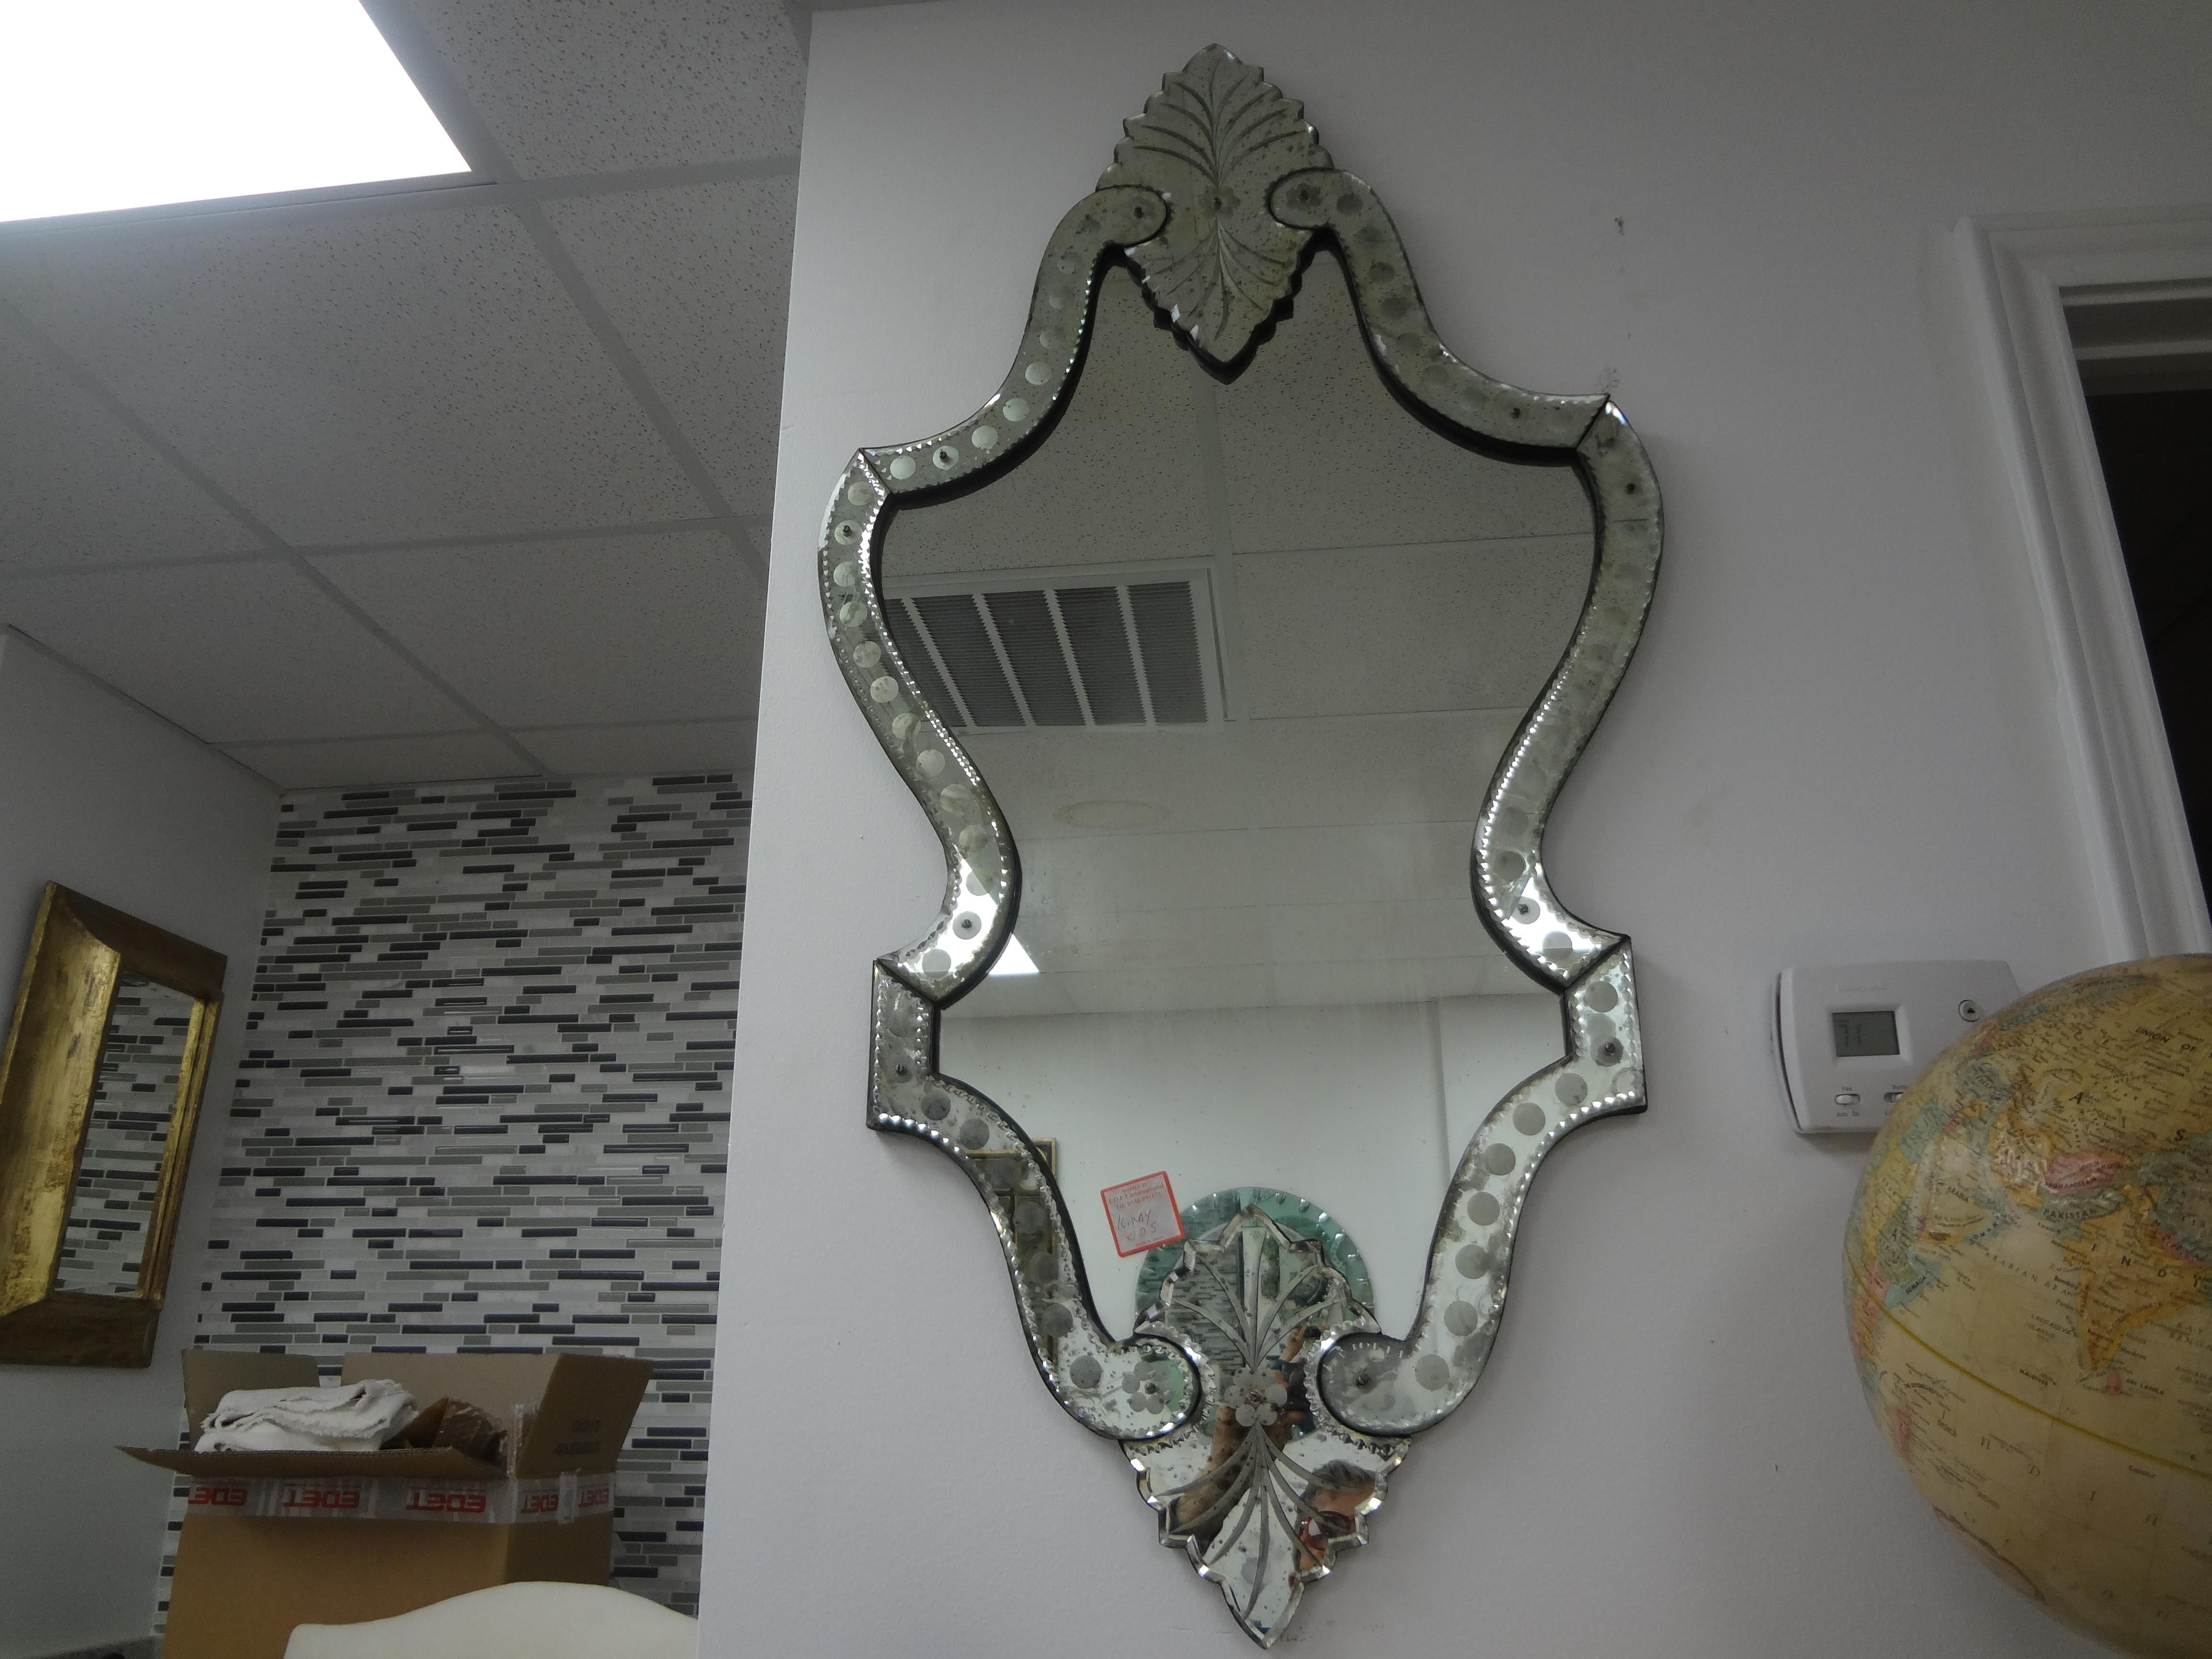 Miroir vénitien vintage gravé.
Ce miroir vénitien gravé vintage et élancé est plein de style...
Notre miroir vénitien italien Hollywood Regency constitue un miroir d'appoint chic pour une salle d'eau ou un dressing !